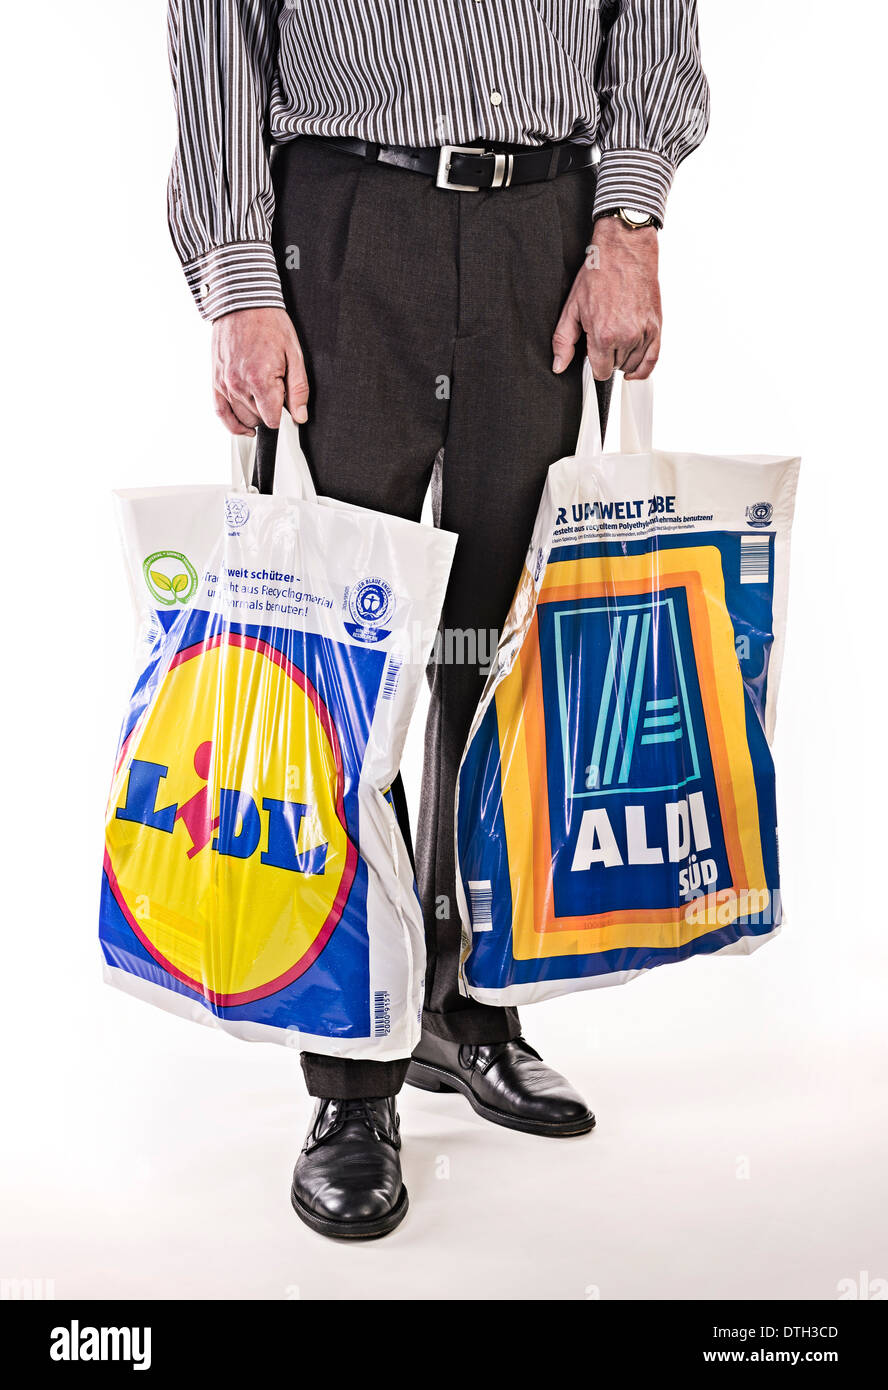 Unterkörper von einem Mann in einem Anzug mit Plastiktüten der Discounter Lidl und Aldi. Stockfoto